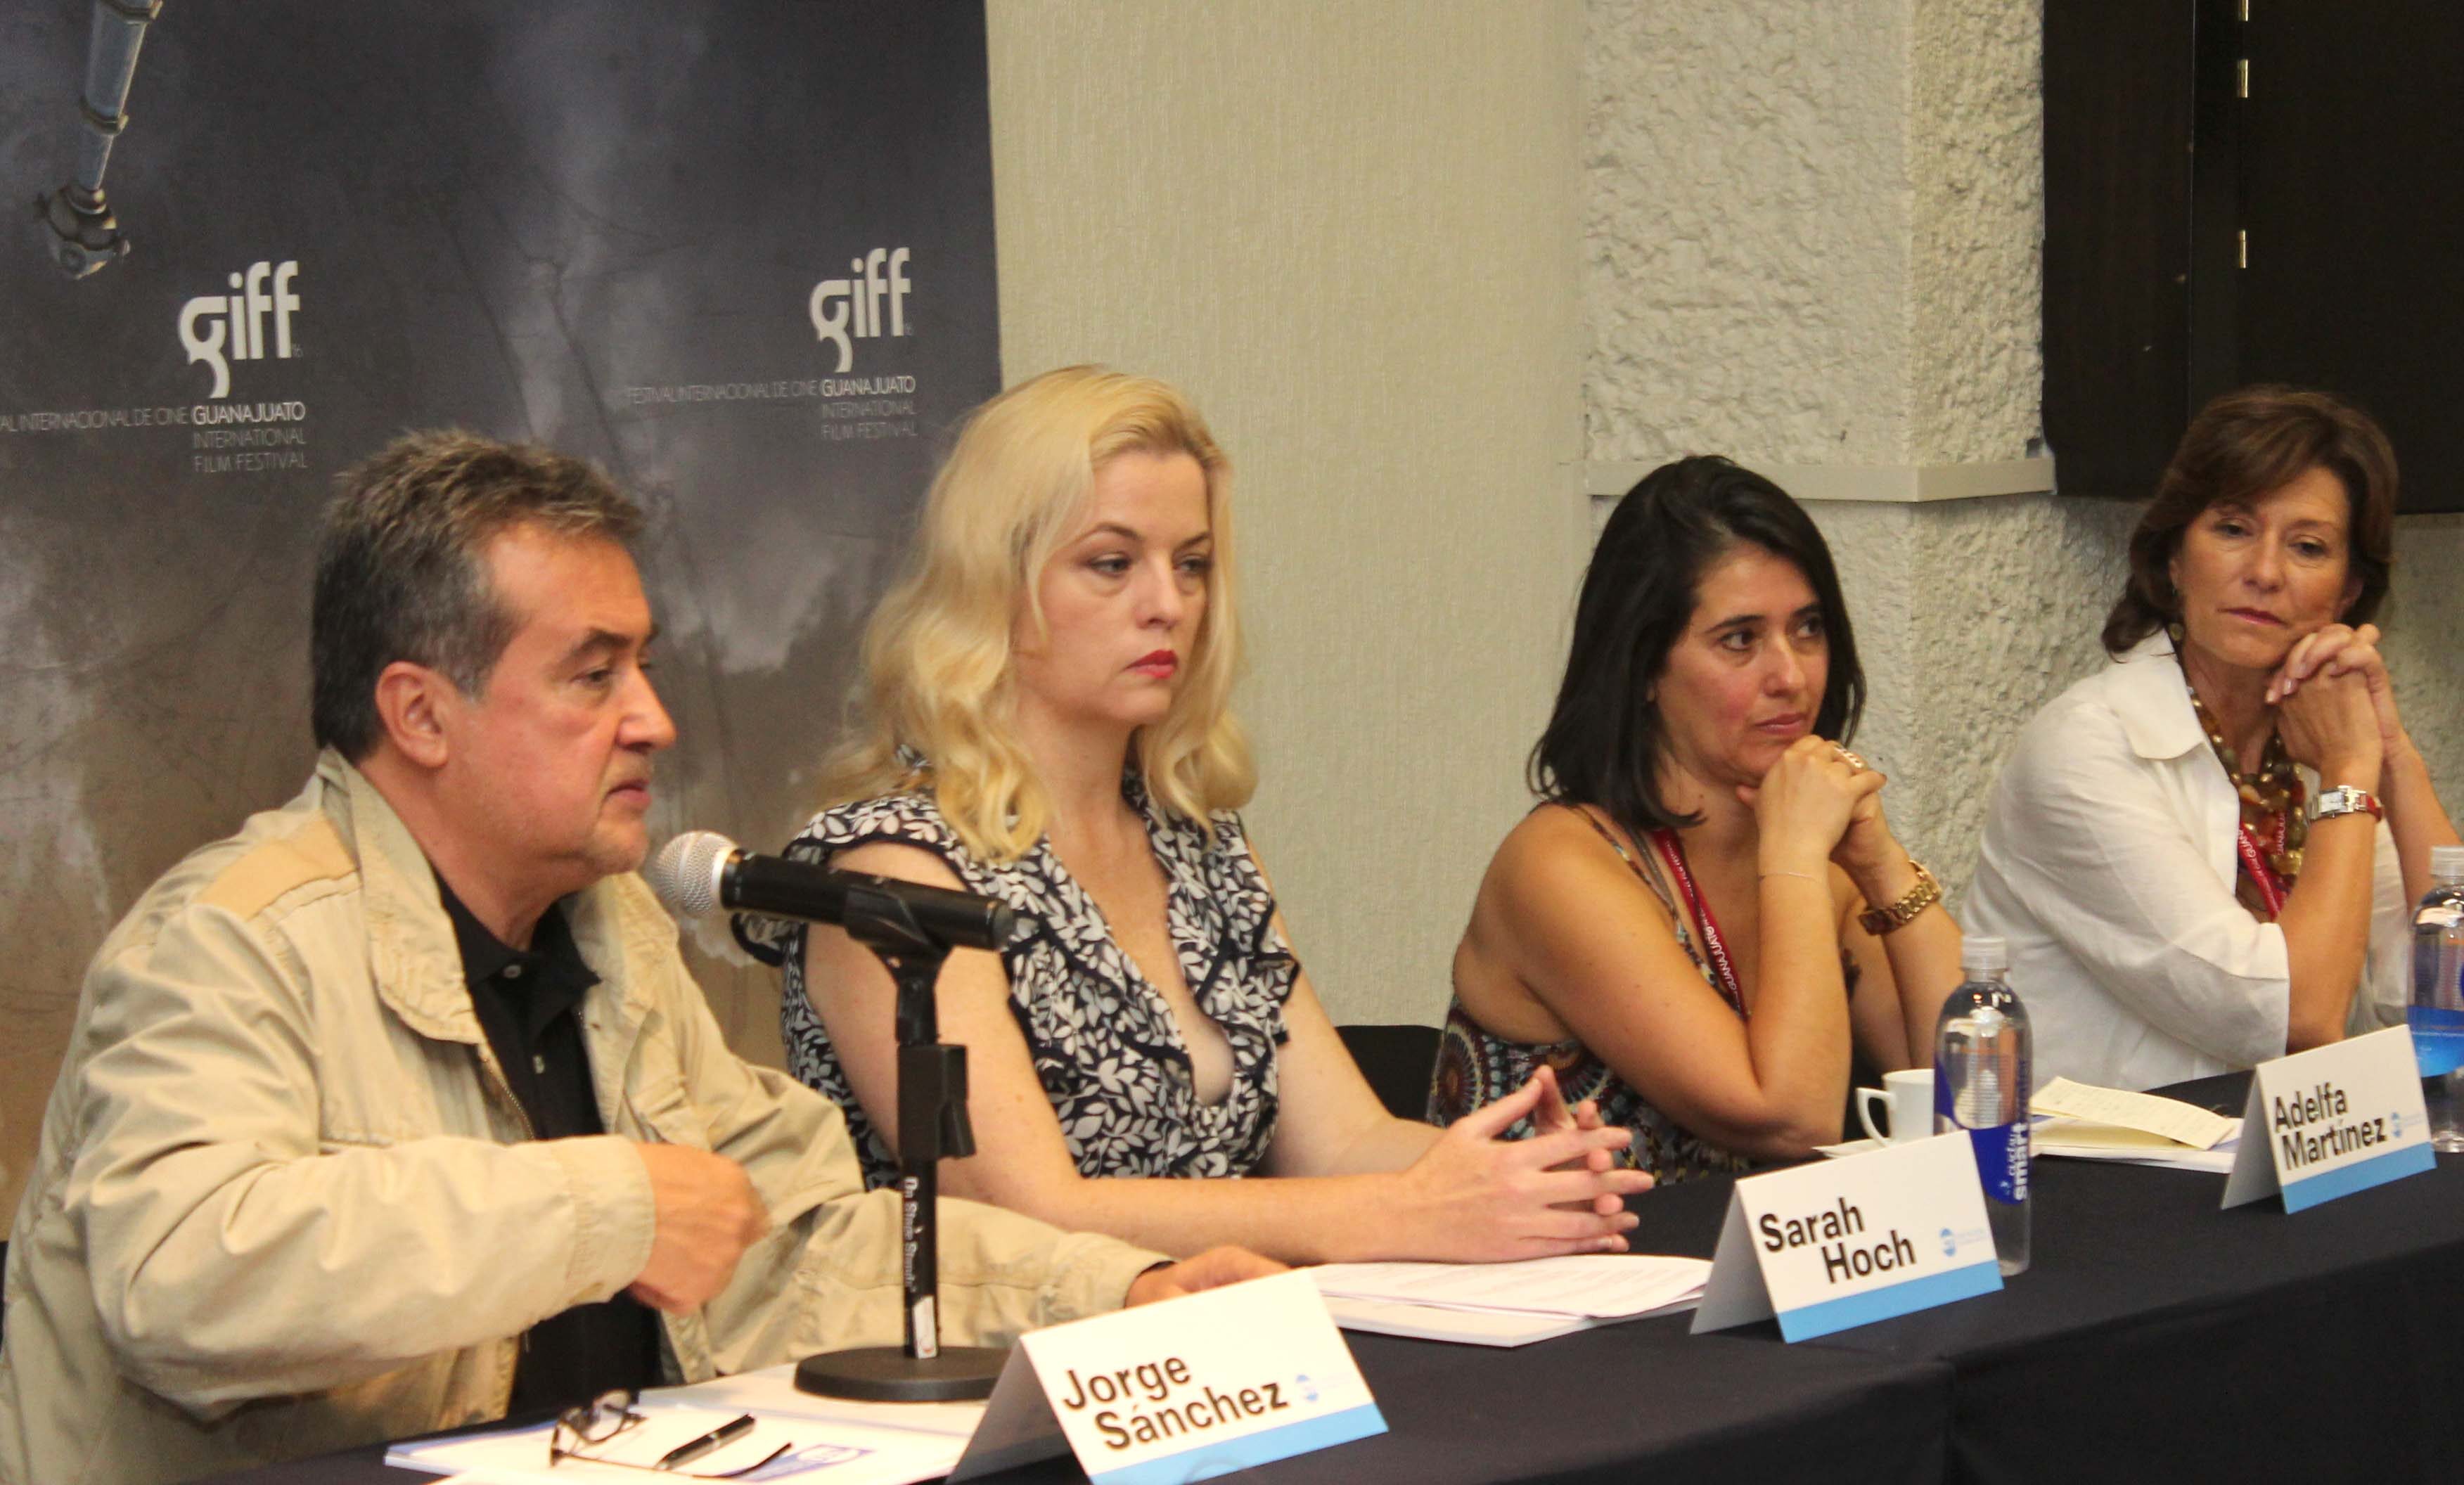 México - Colombia: Cine y enlaces de la mirada #GIFF2013